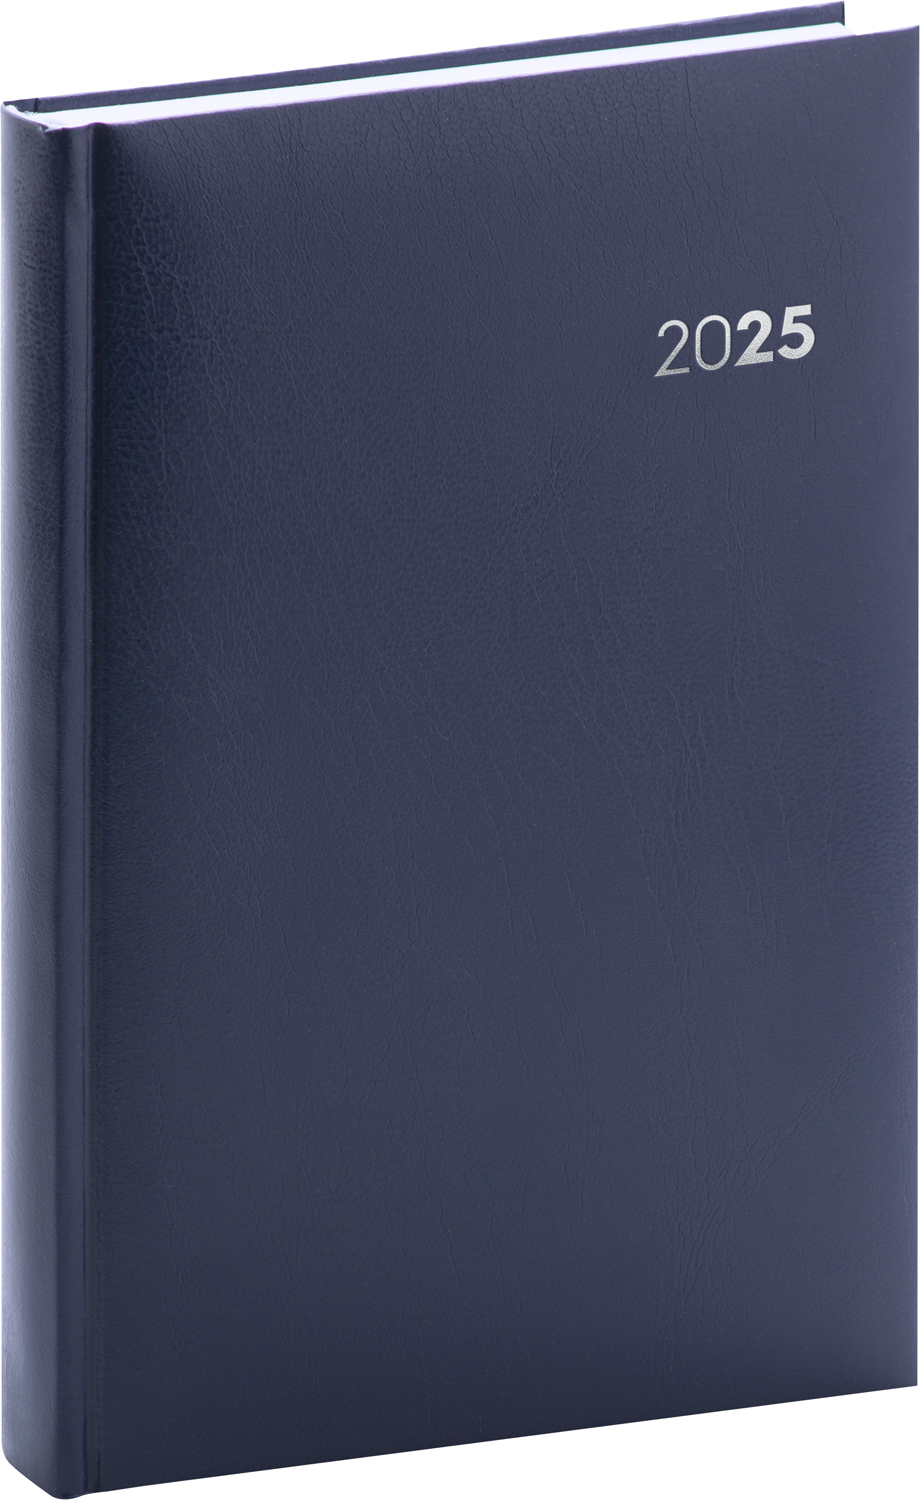 Denní diář Balacron 2025, A5 - modrá